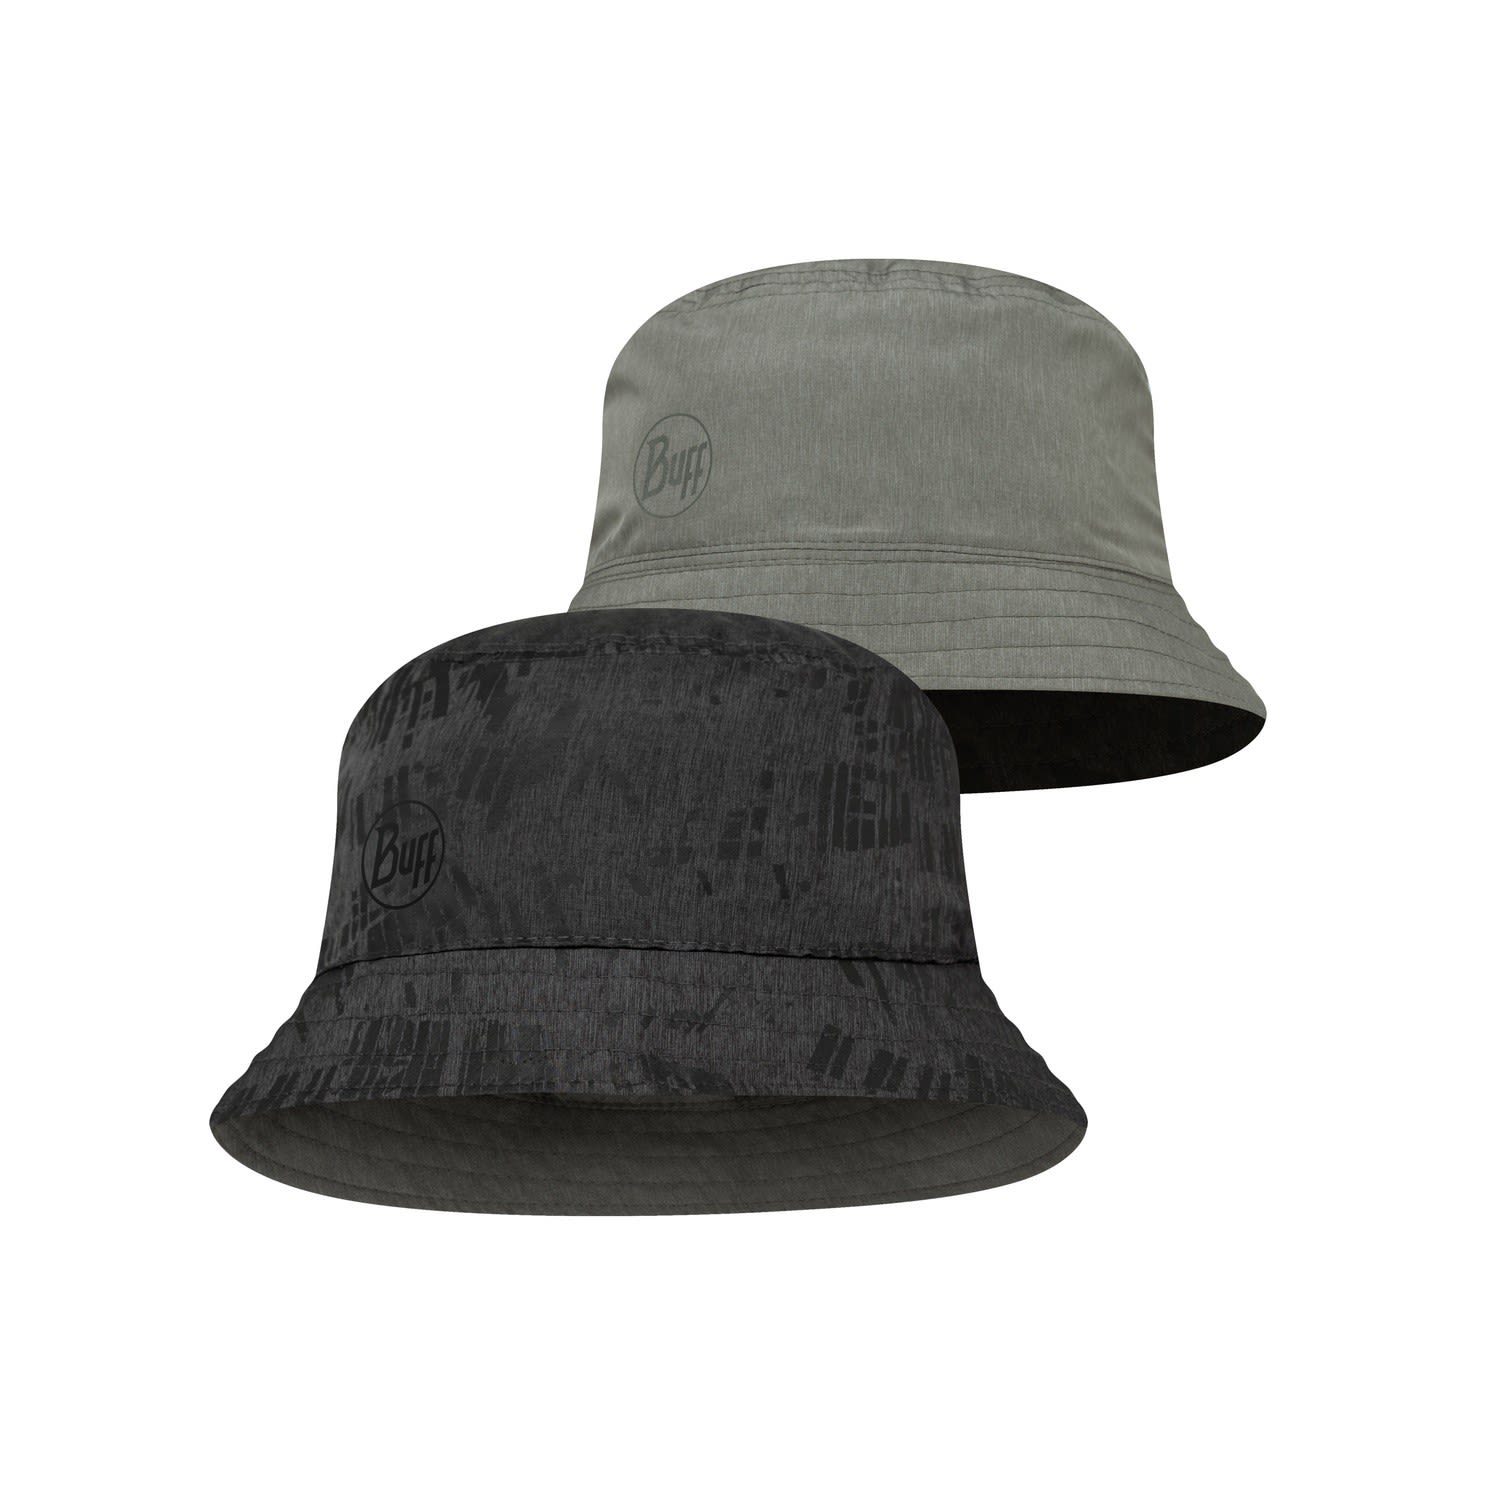 Buff Travel Bucket Hat Grau - Schwarz- Caps und Hte- Grsse S-M - Farbe Gline Black - Grey